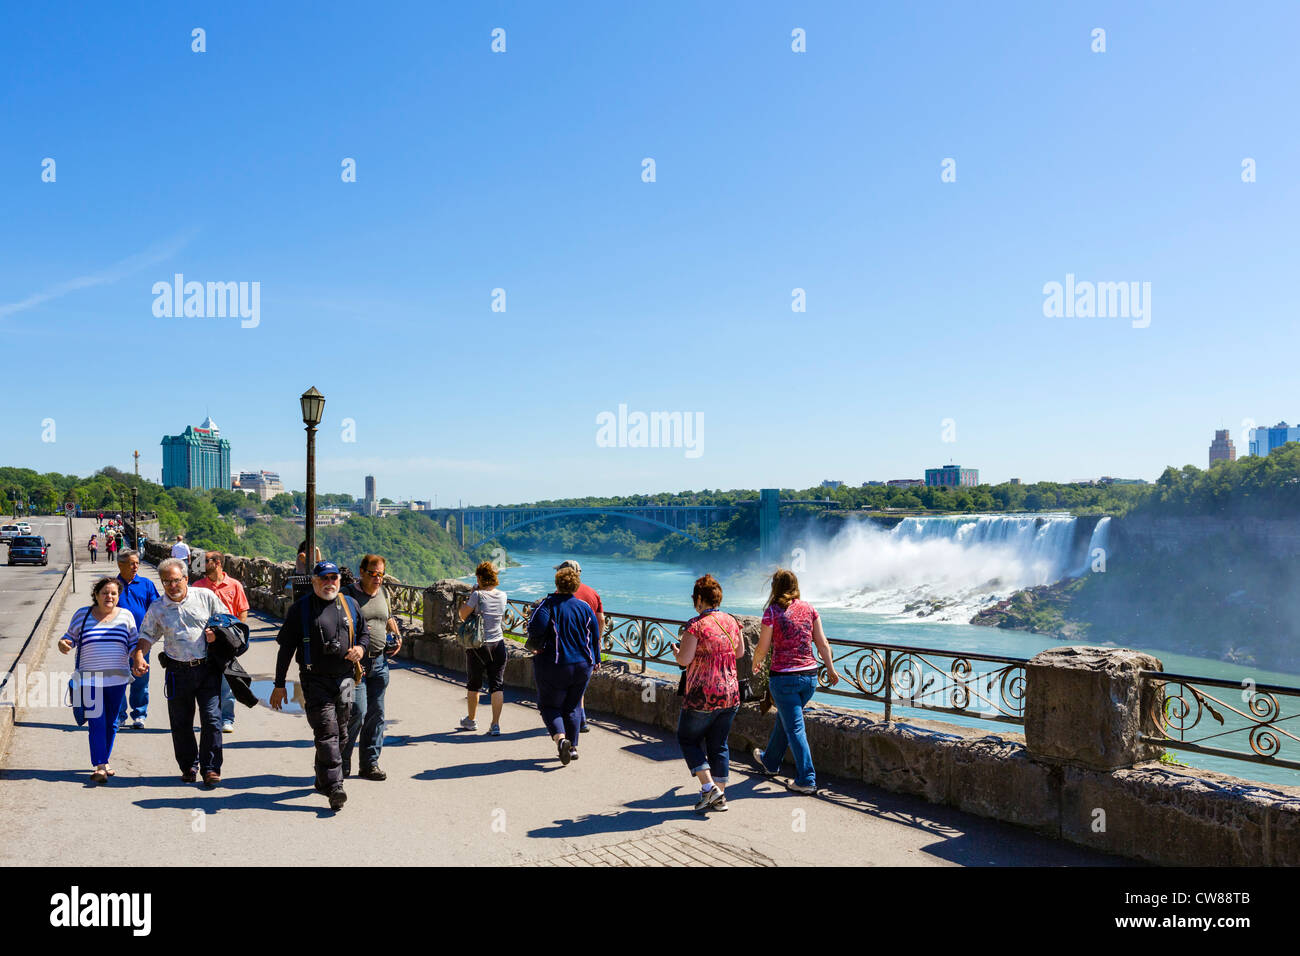 Les touristes en chemin avec les chutes américaines derrière, Niagara Falls (Ontario), Canada Banque D'Images